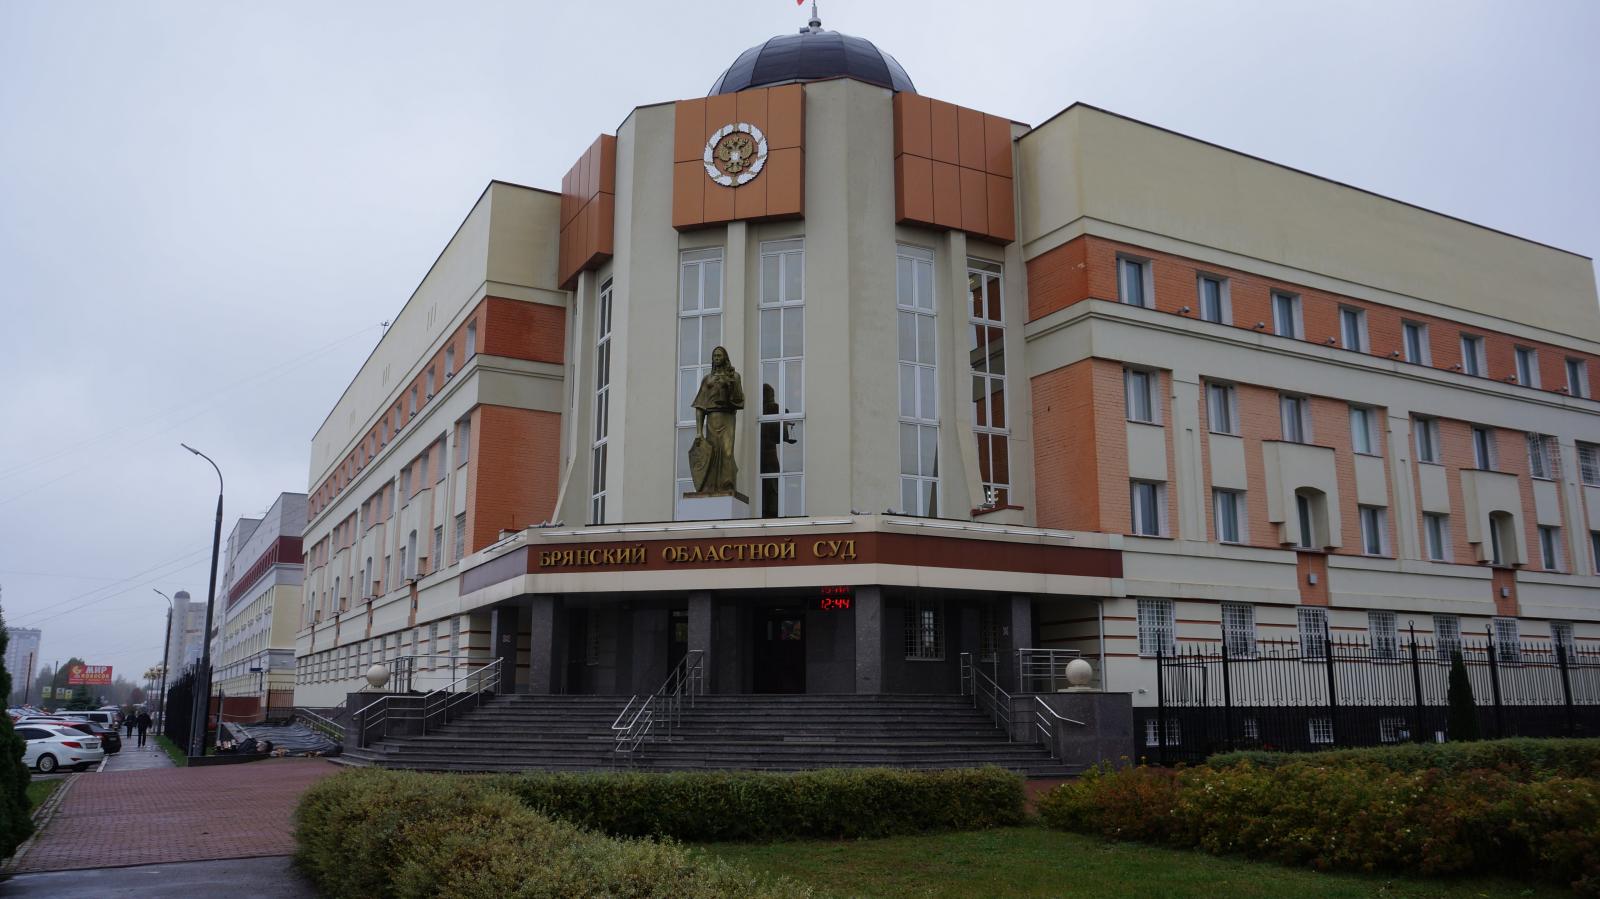 В Брянской области до 10 февраля принимаются документы на вакансию судьи областного суда